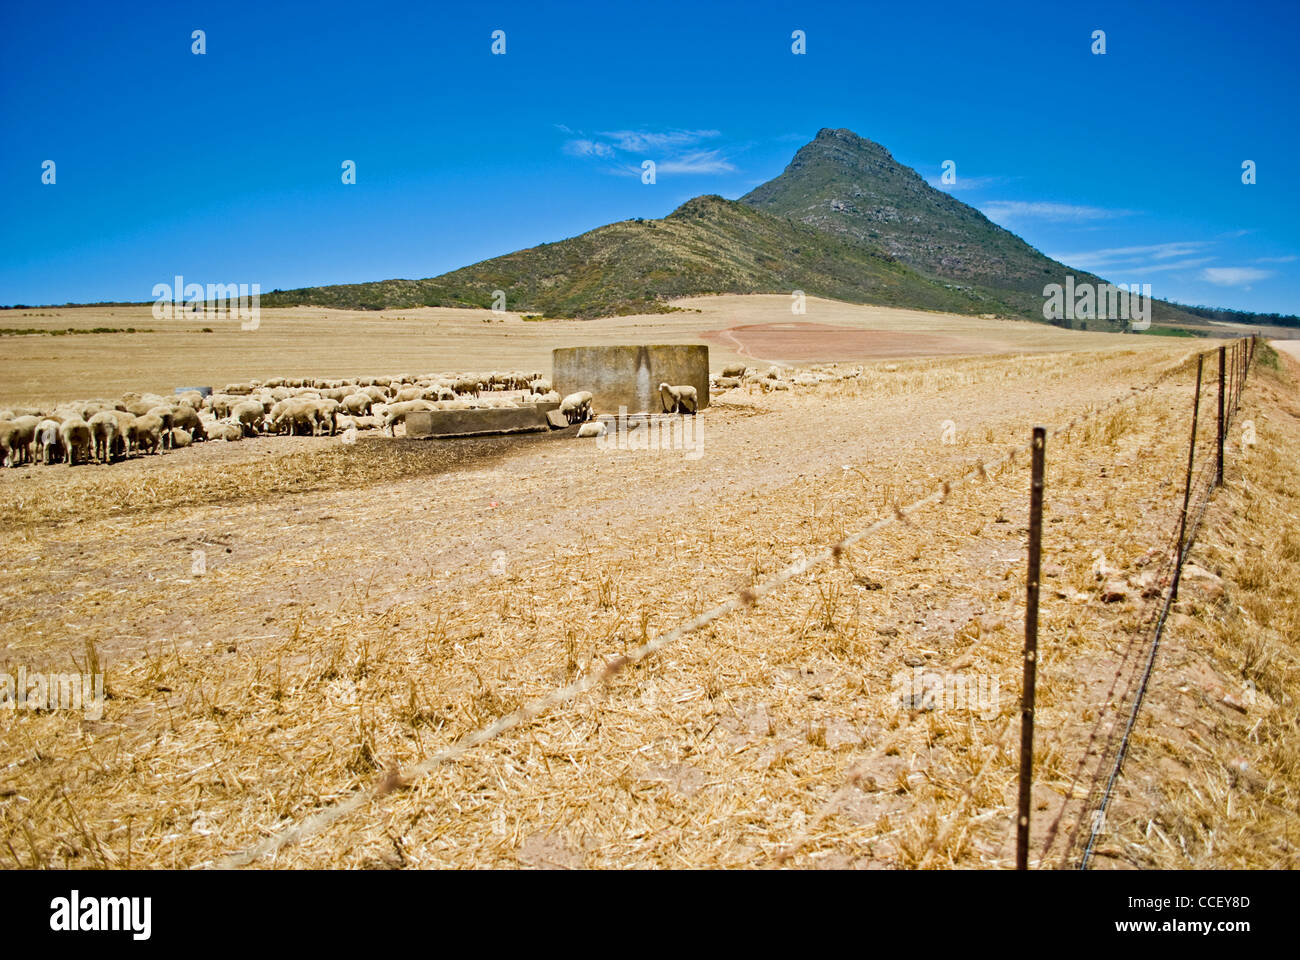 Des moutons paissant dans Riebeeksrivier au pied de la montagne près de Kasteelberg Riebeek West dans le Western Cape, Afrique du Sud. Banque D'Images